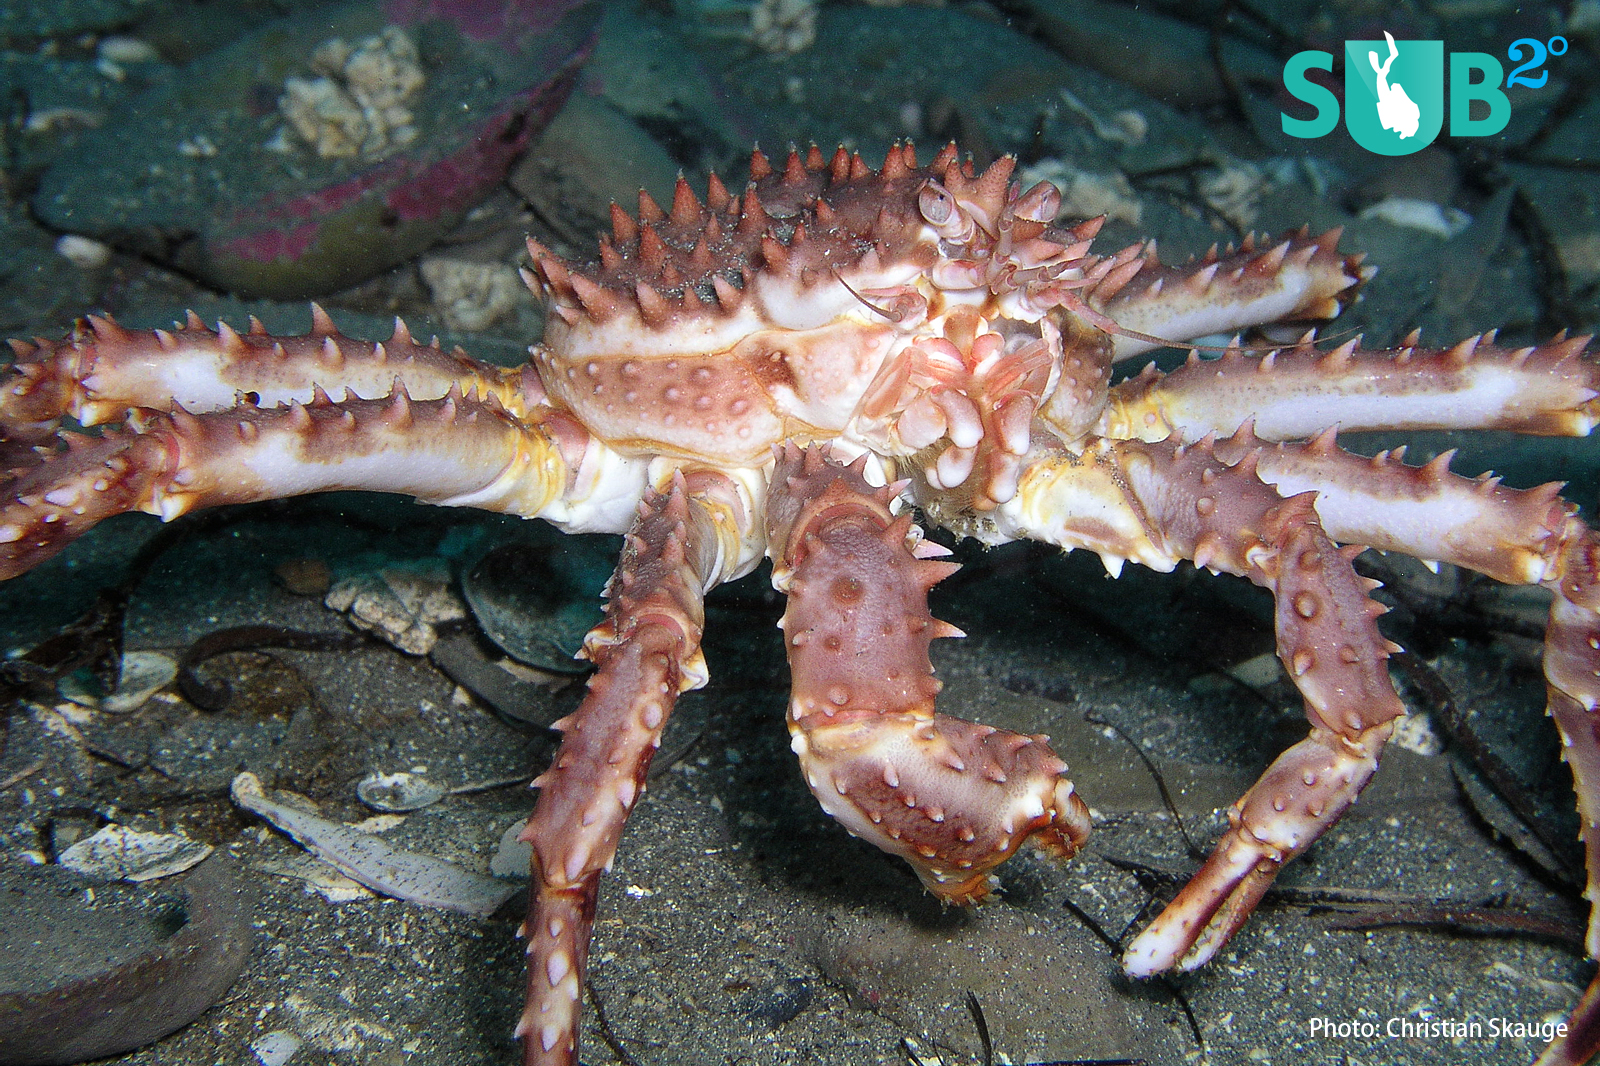 Juvenile King Crab